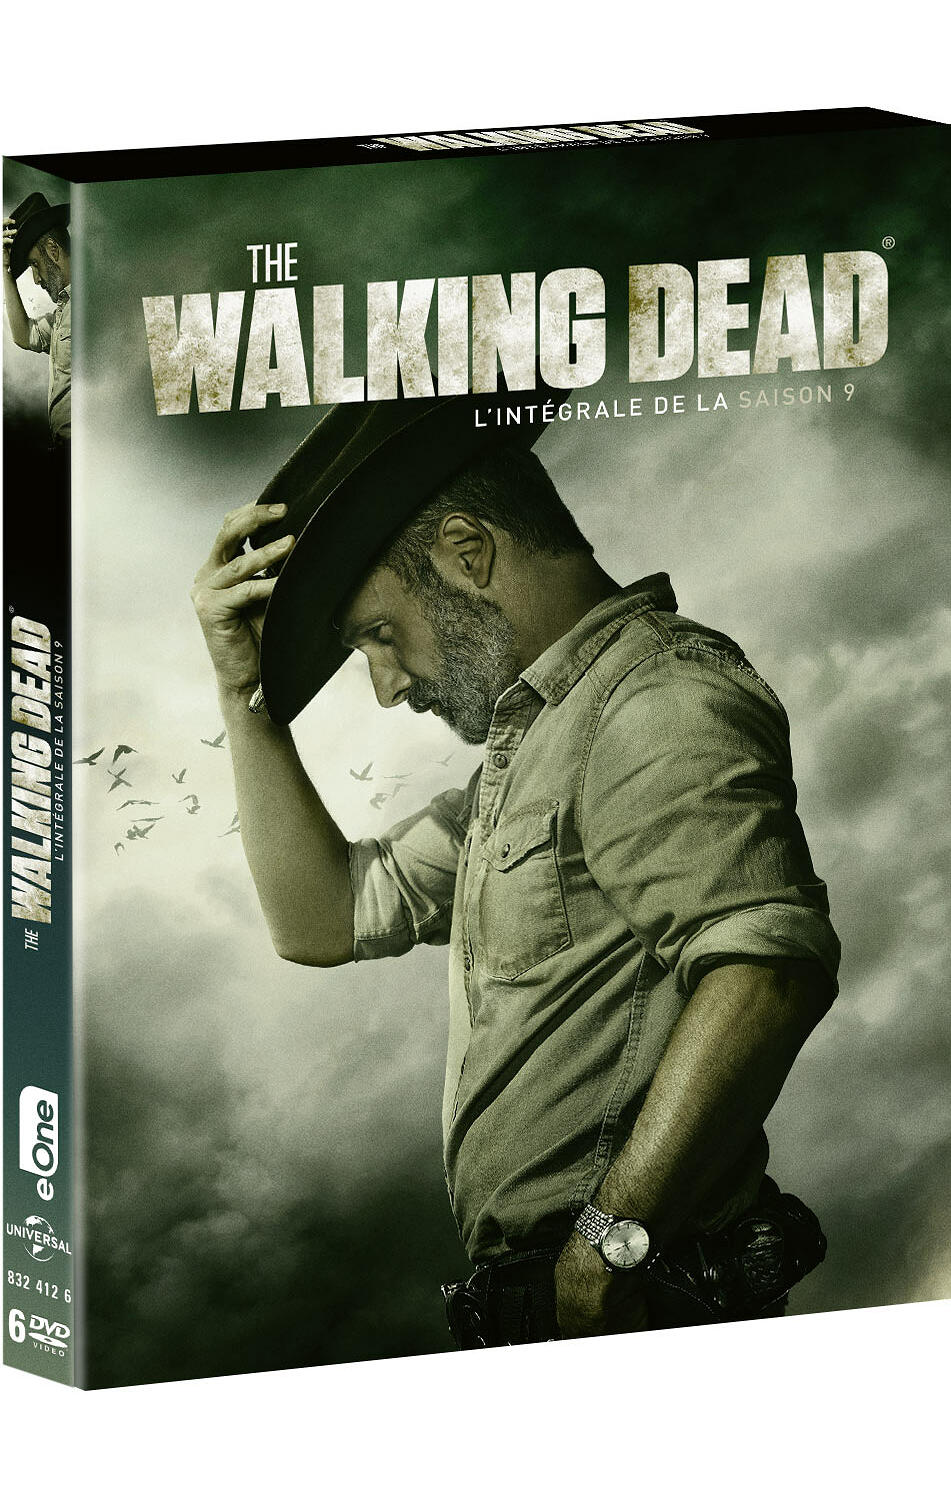 Couverture de : The Walking Dead Saison 9, L'intégrale